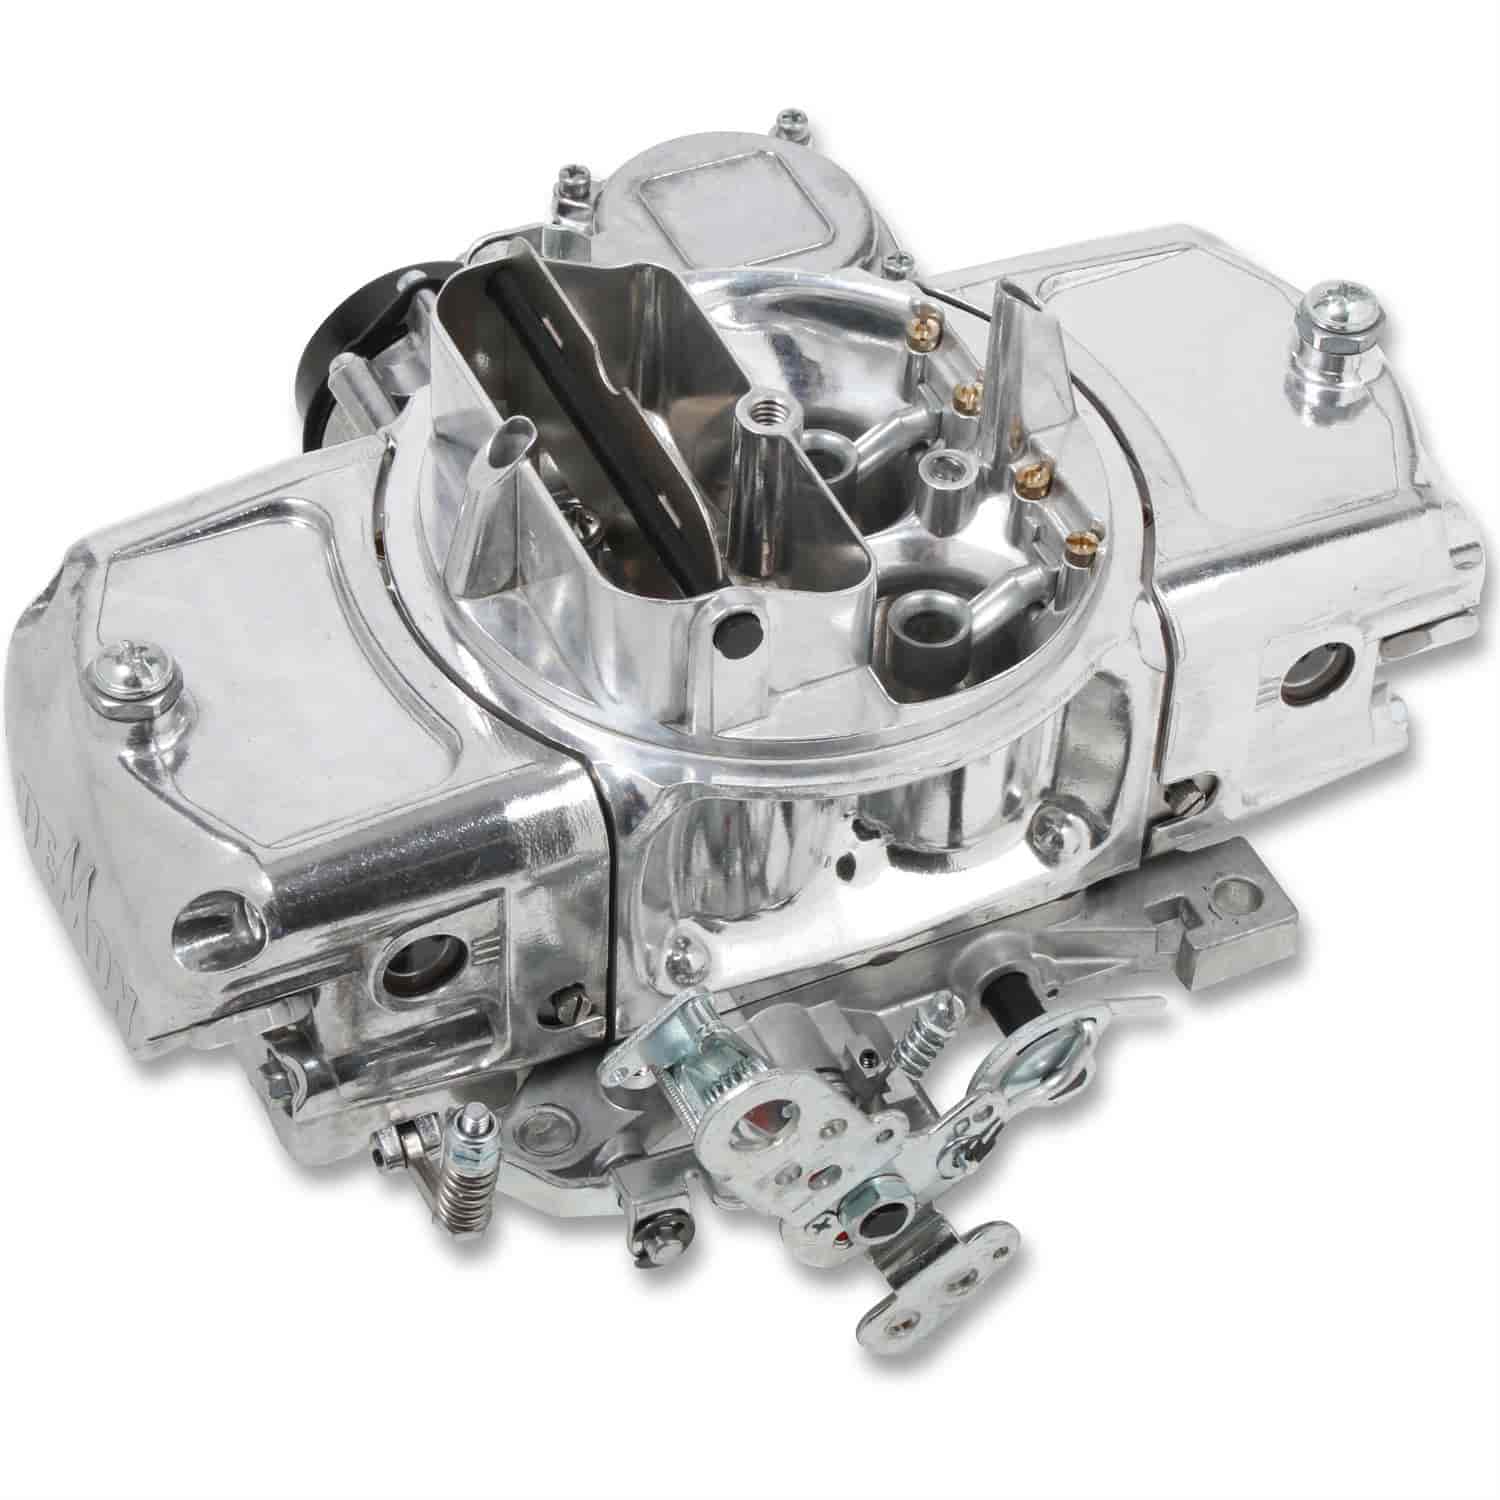 750 CFM Road Demon Carburetor [Electric Choke, Vacuum Secondaries]